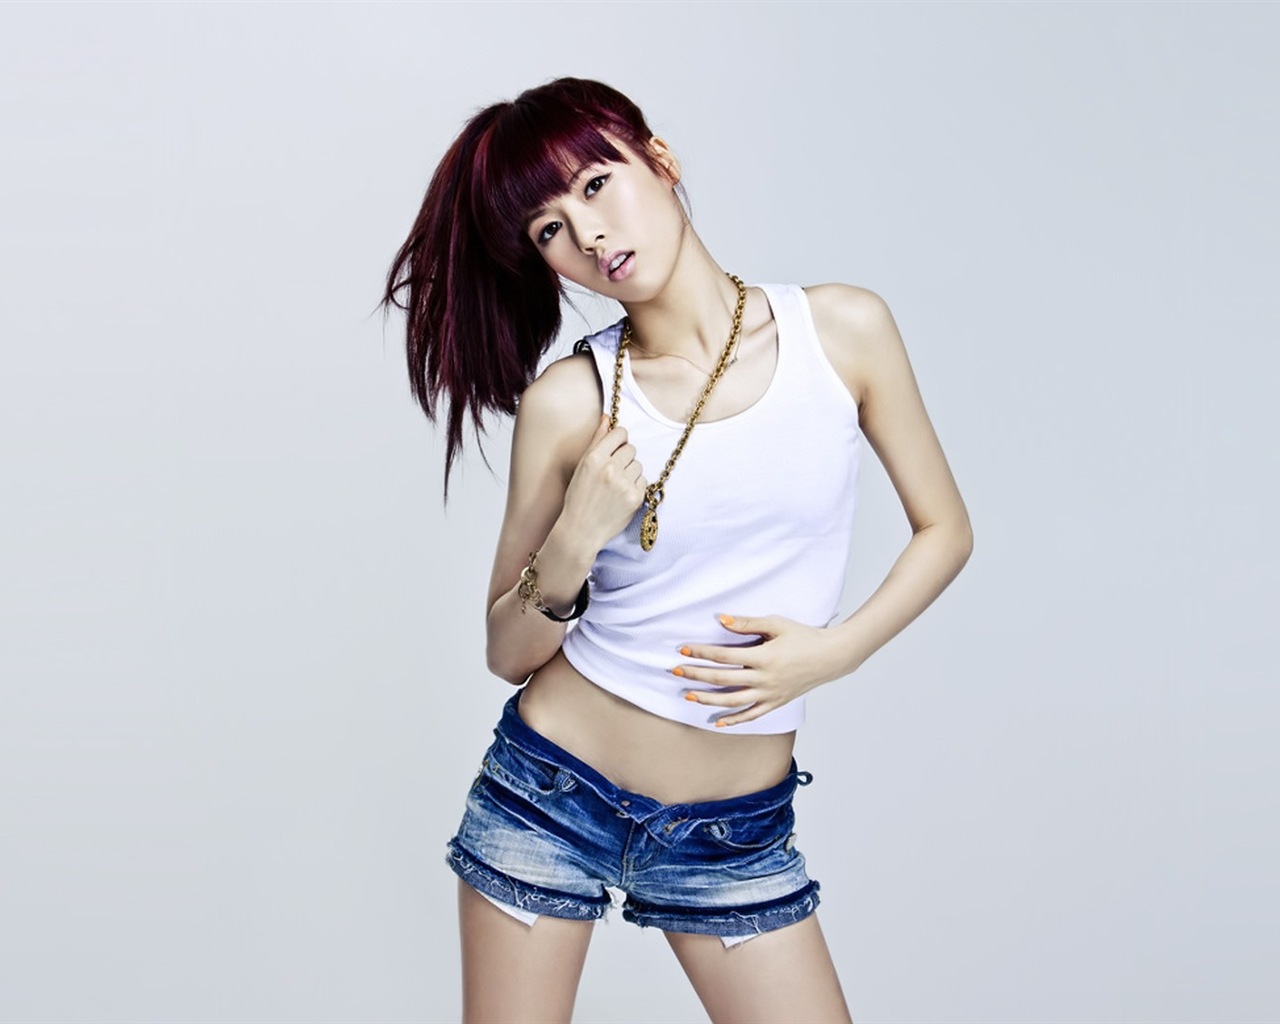 4Minute Musique coréenne belle combinaison Girls Wallpapers HD #11 - 1280x1024